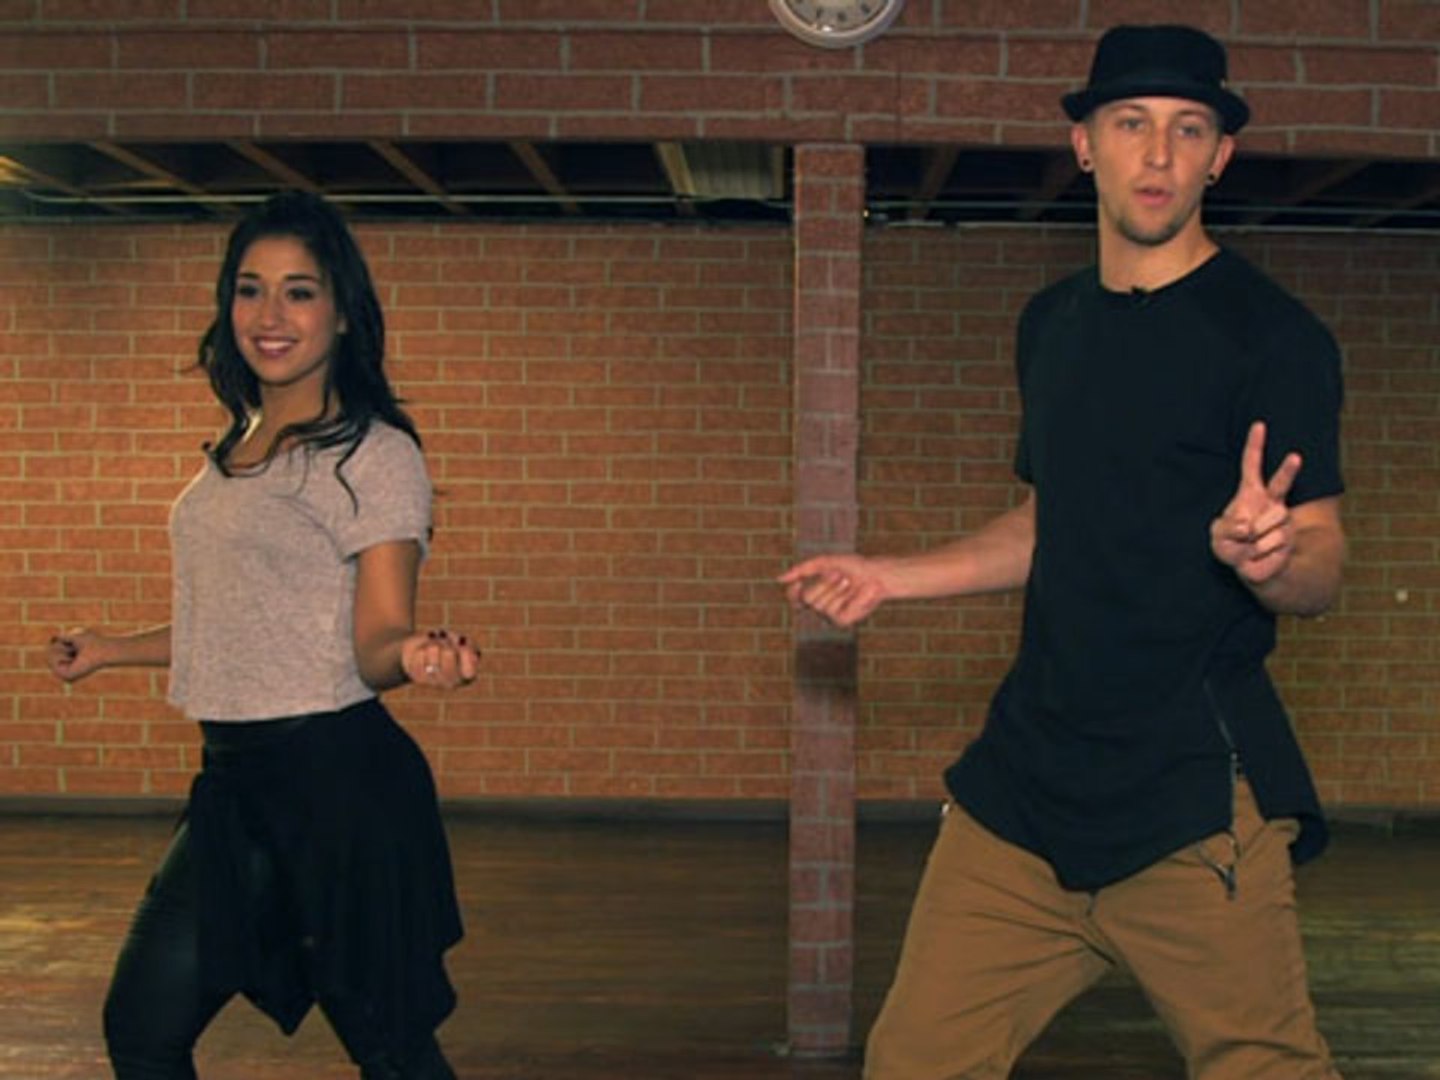 Dance Lessons with Dana Alexa & Matt Steffanina - video Dailymotion